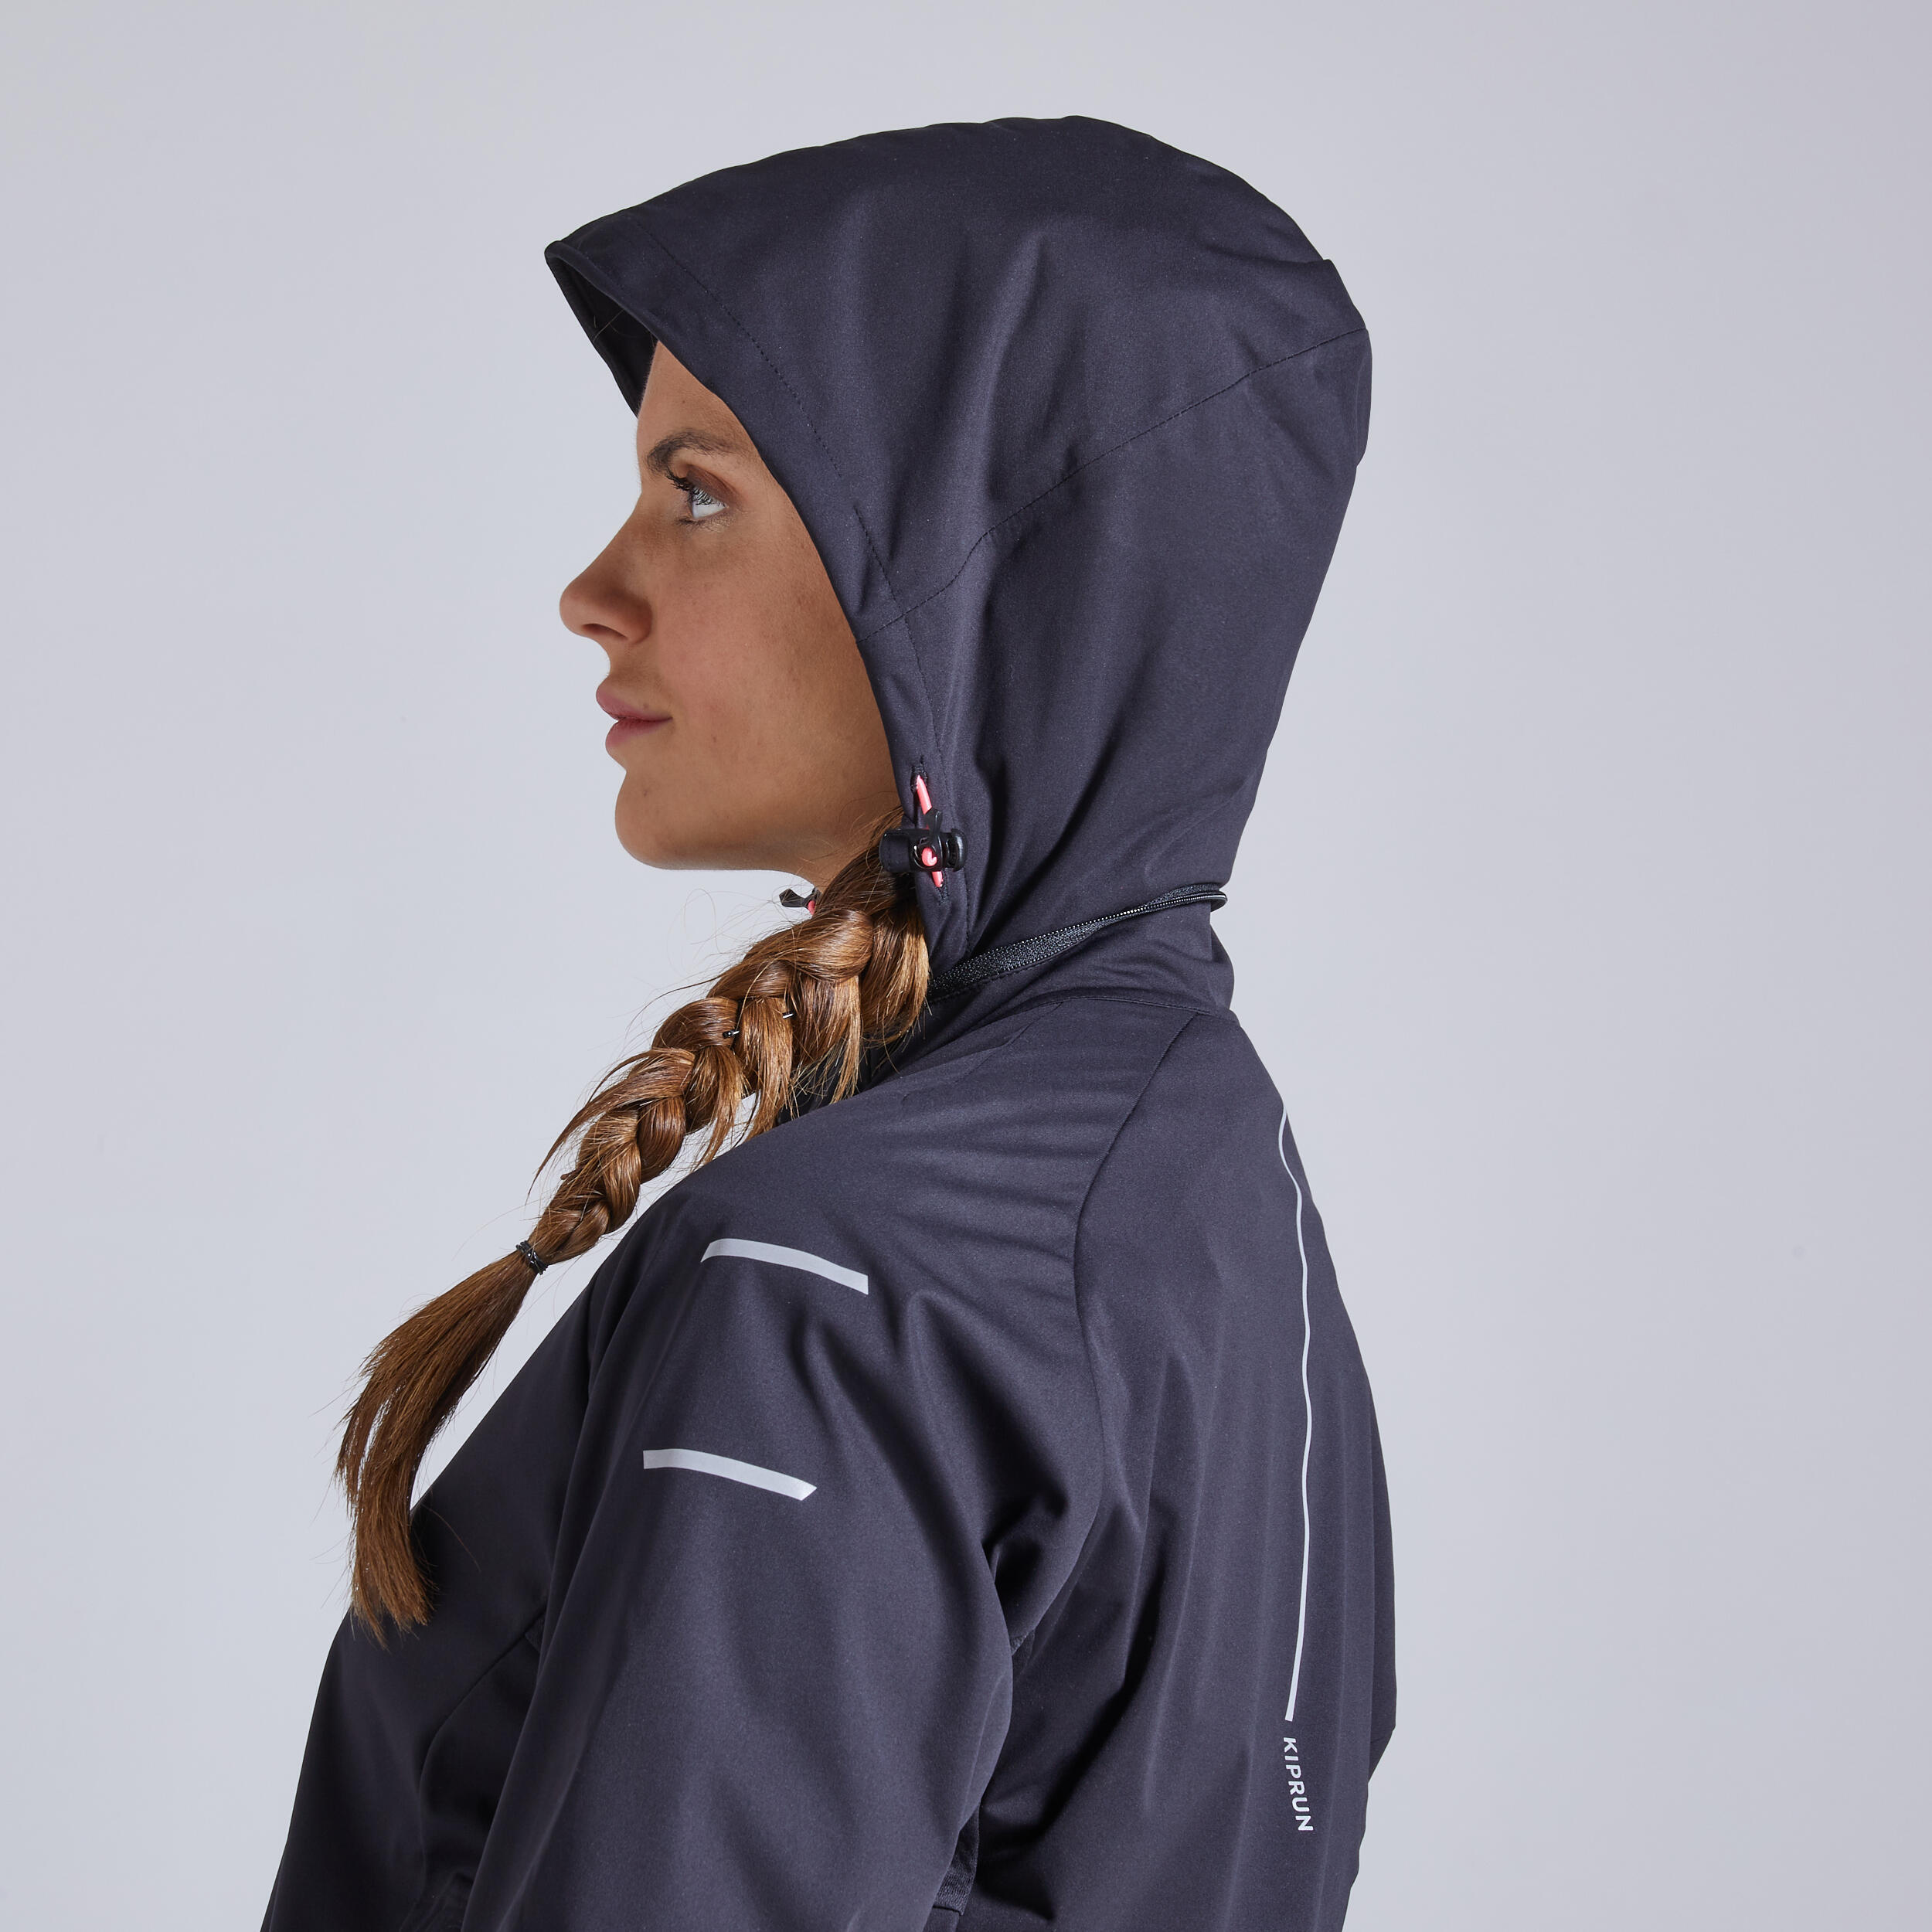 Warm Regul Women's Running Water Repellent Windproof Jacket - Black 6/12